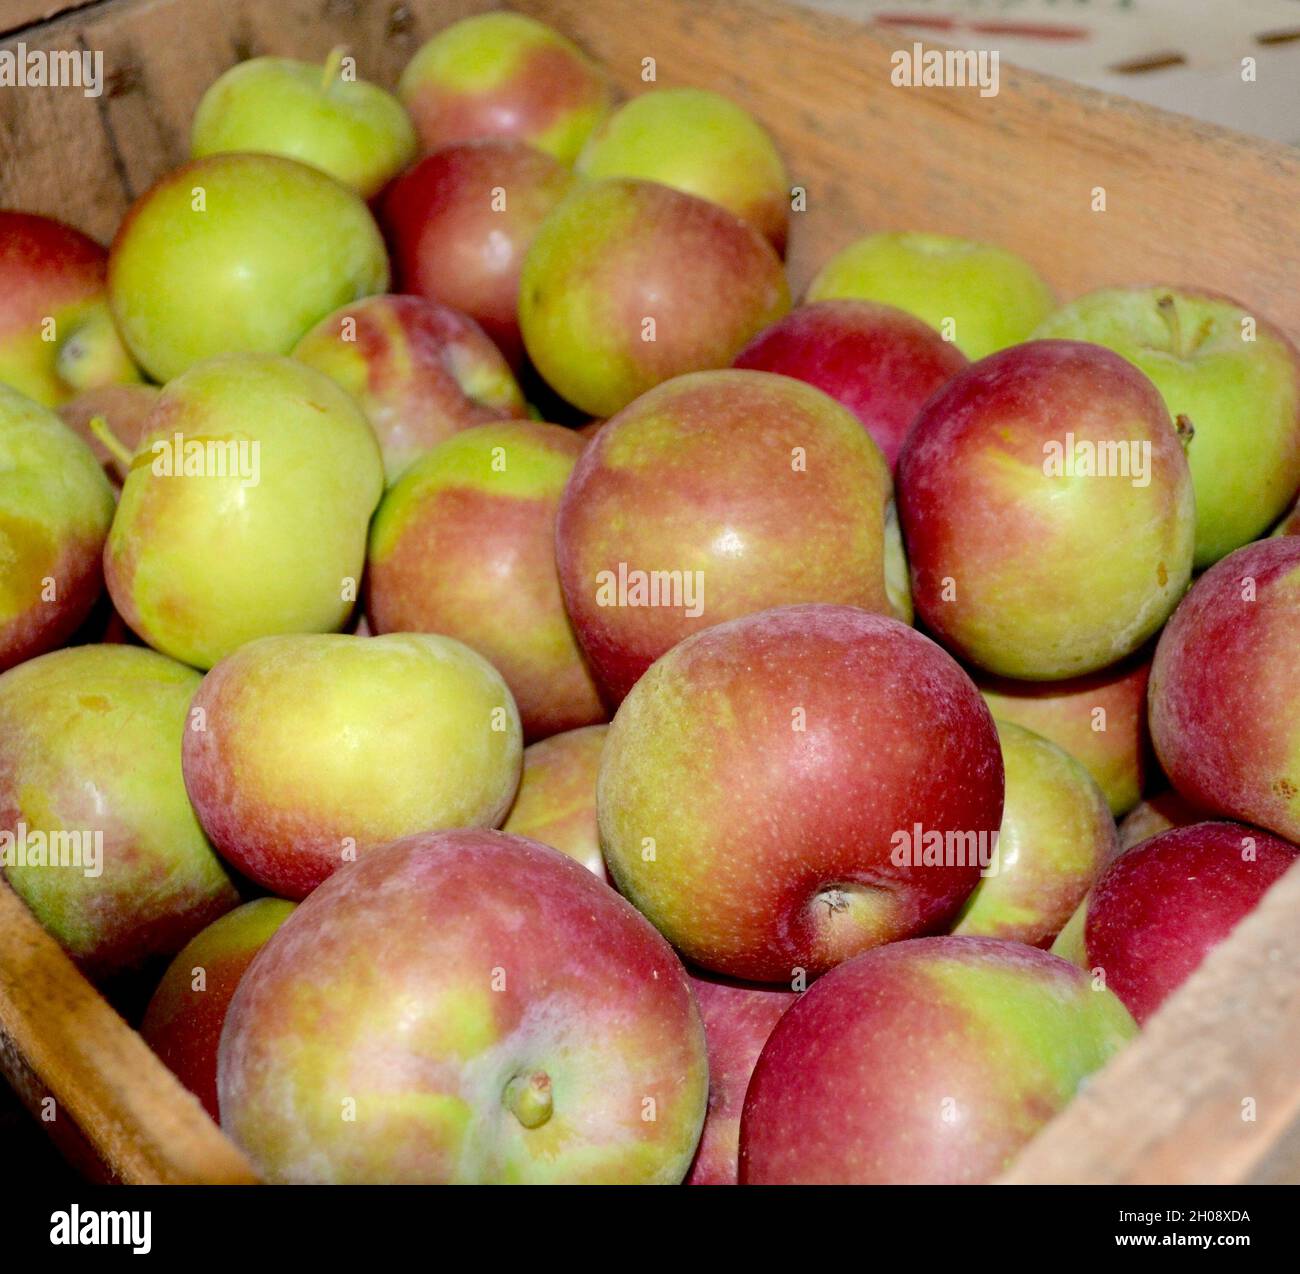 Knackige Macintosh-Äpfel aus dem Hudson Valley in New York werden in einer Holzkiste geliefert. Stockfoto